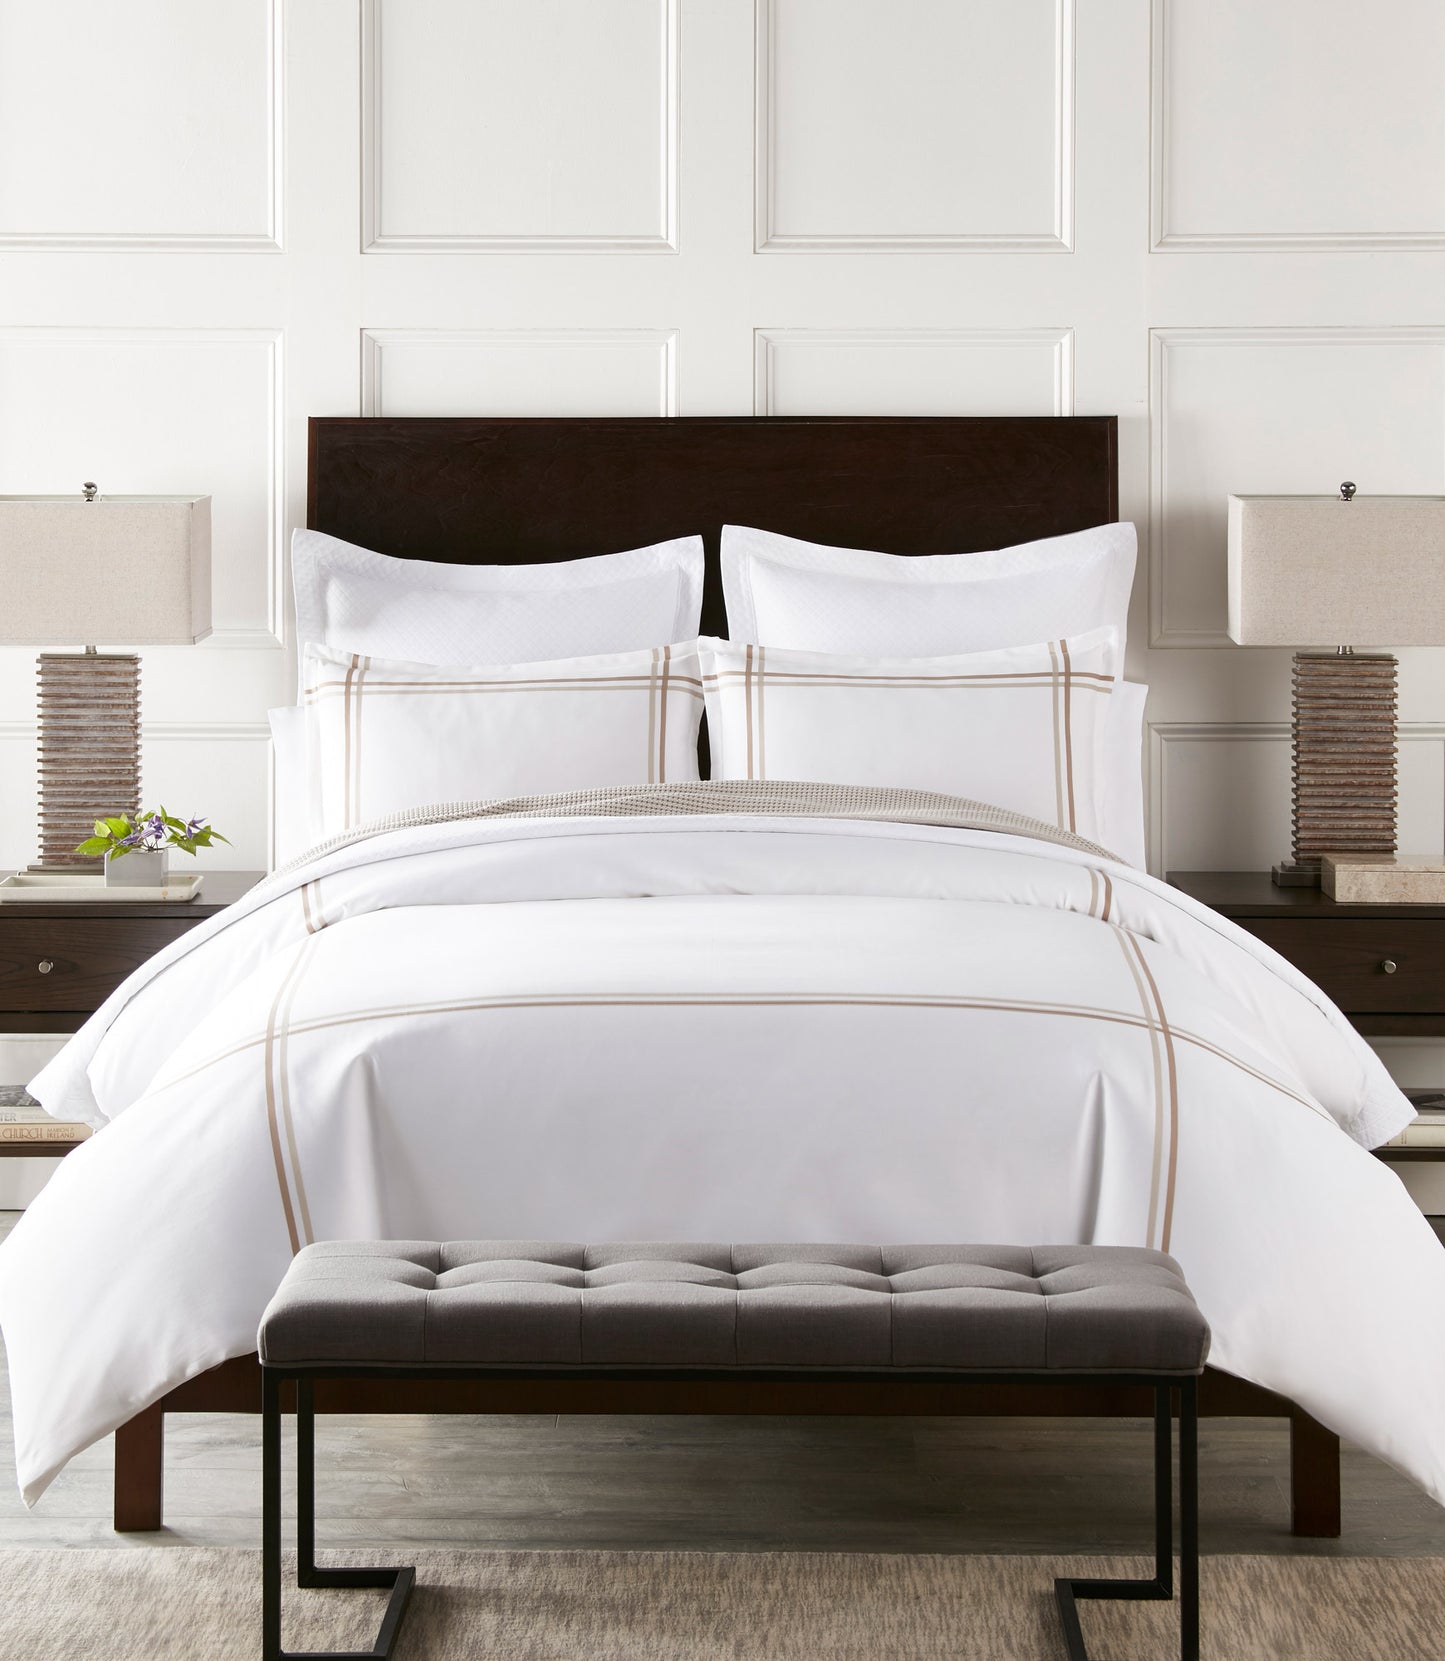 Duo Duvet Linen on Bed in Hotel Room